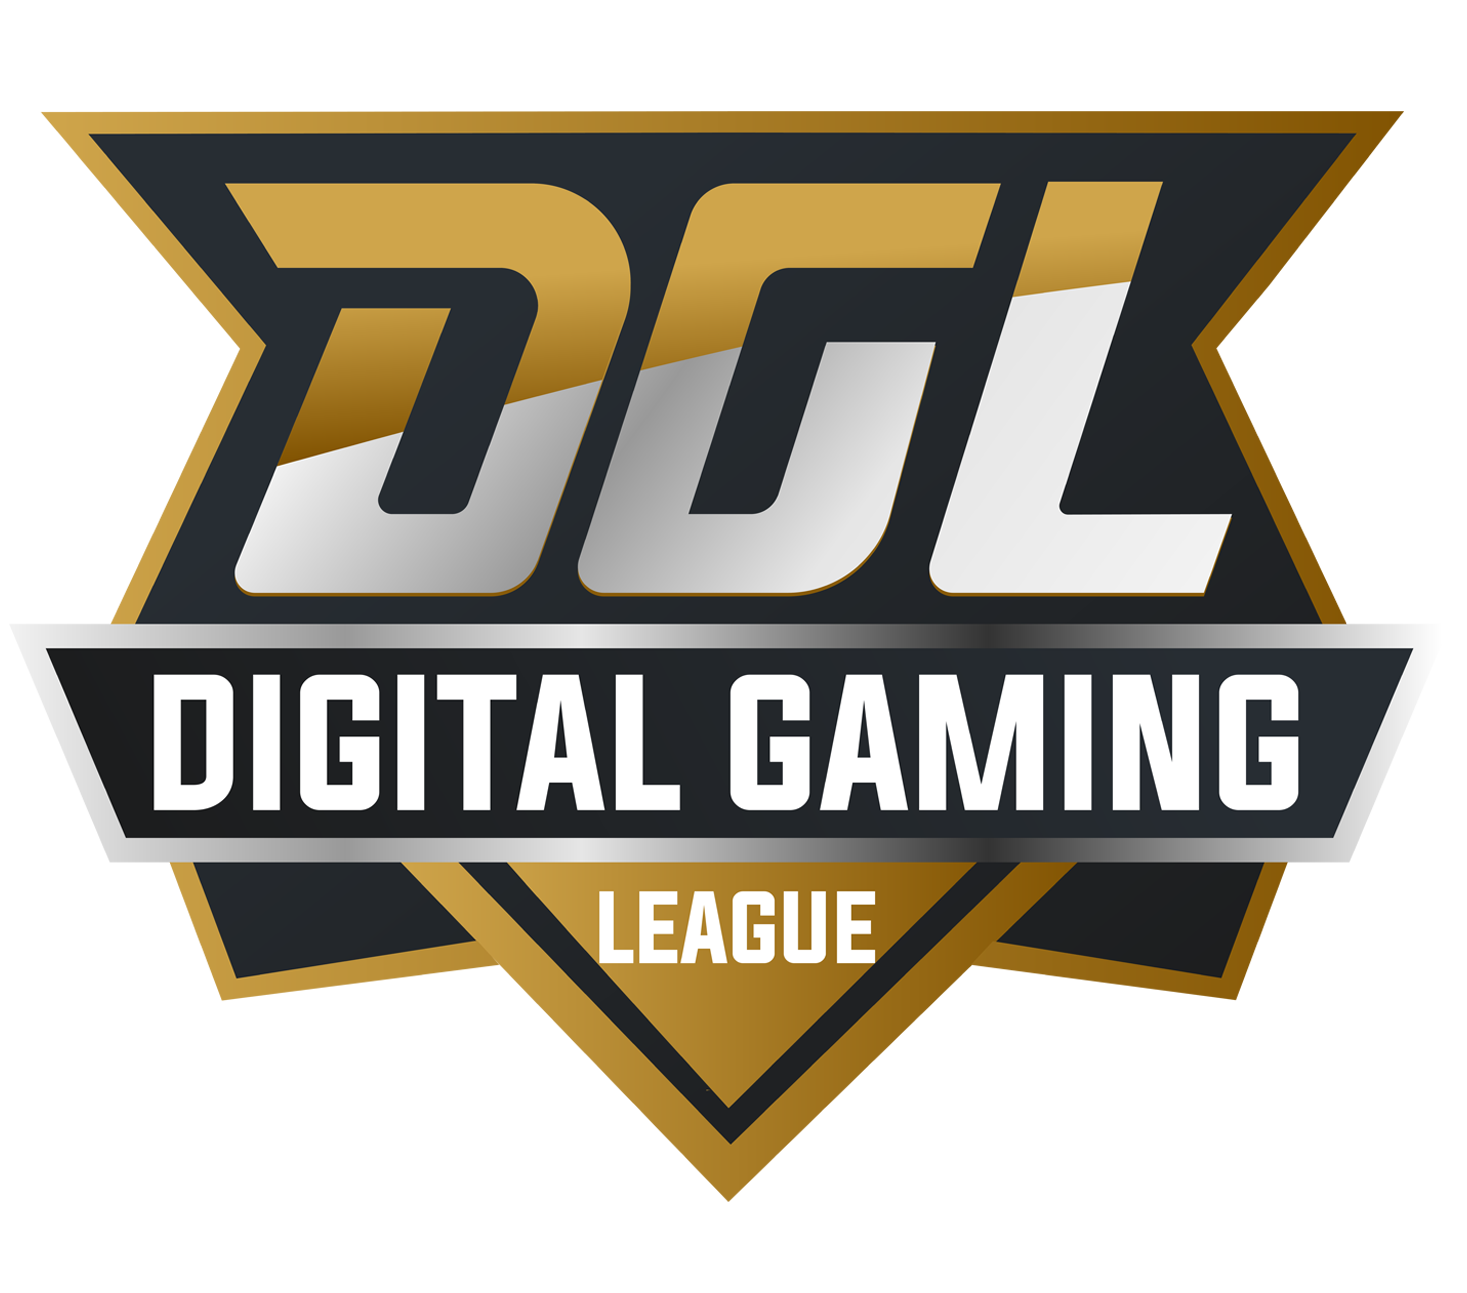 DGL logo